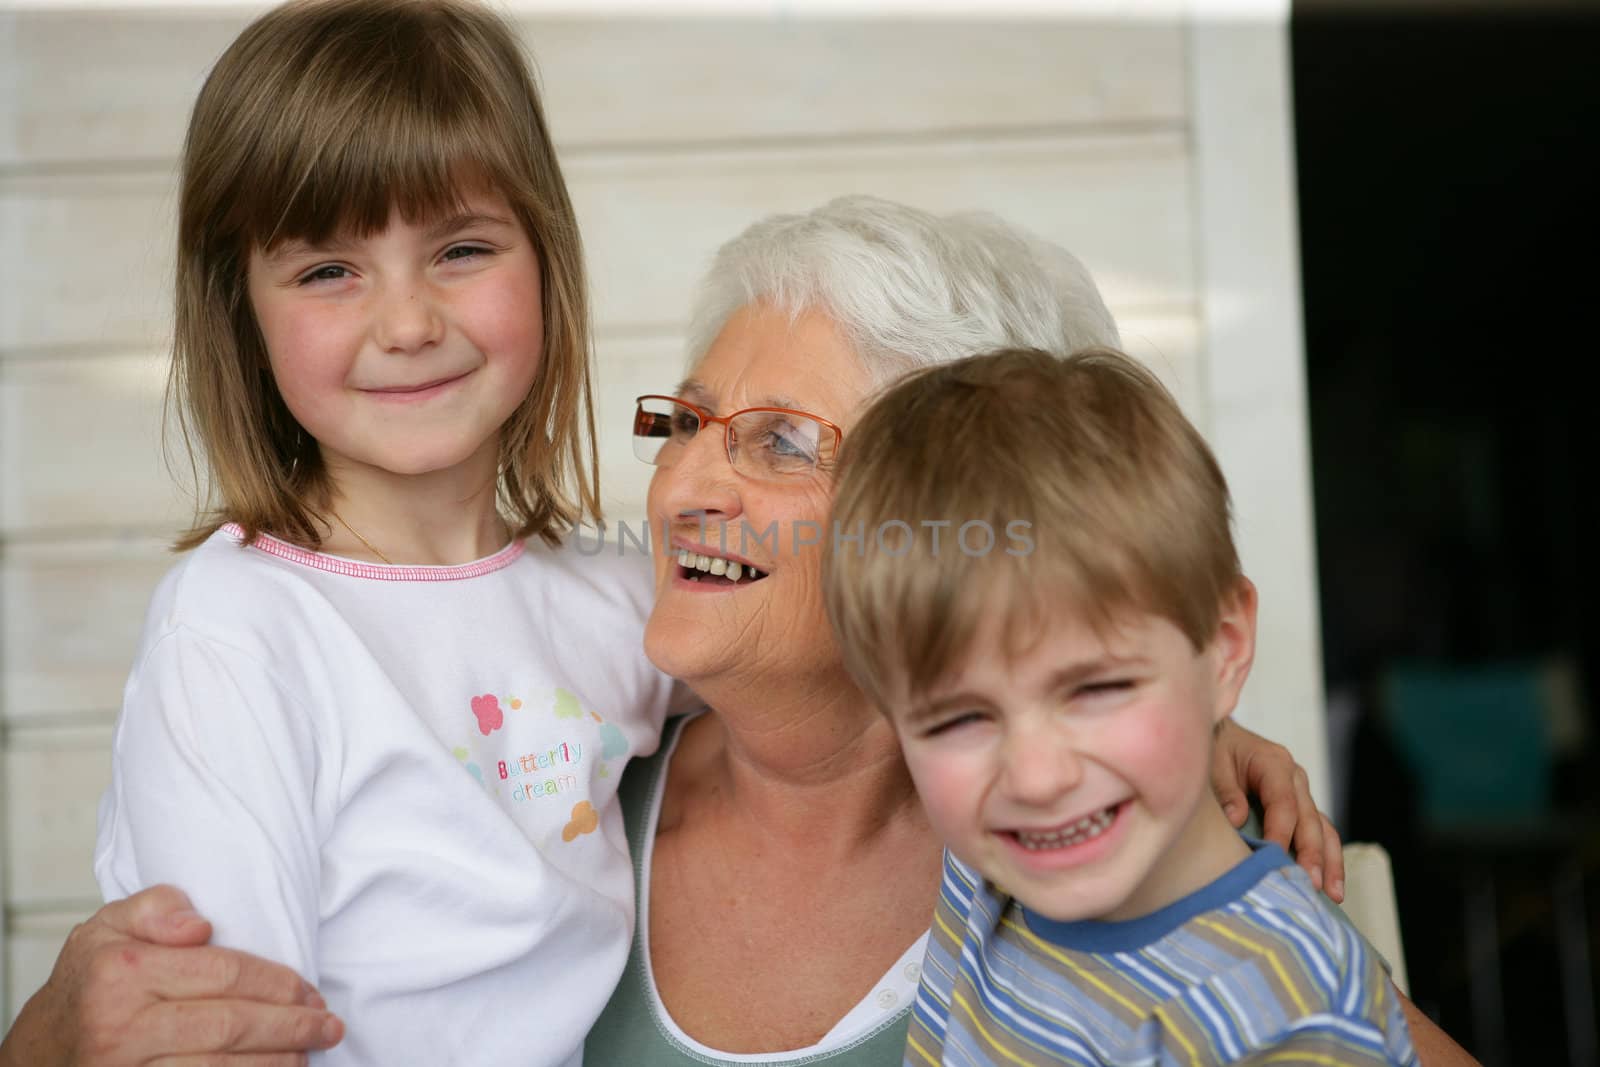 Grandmother looking after grandchildren